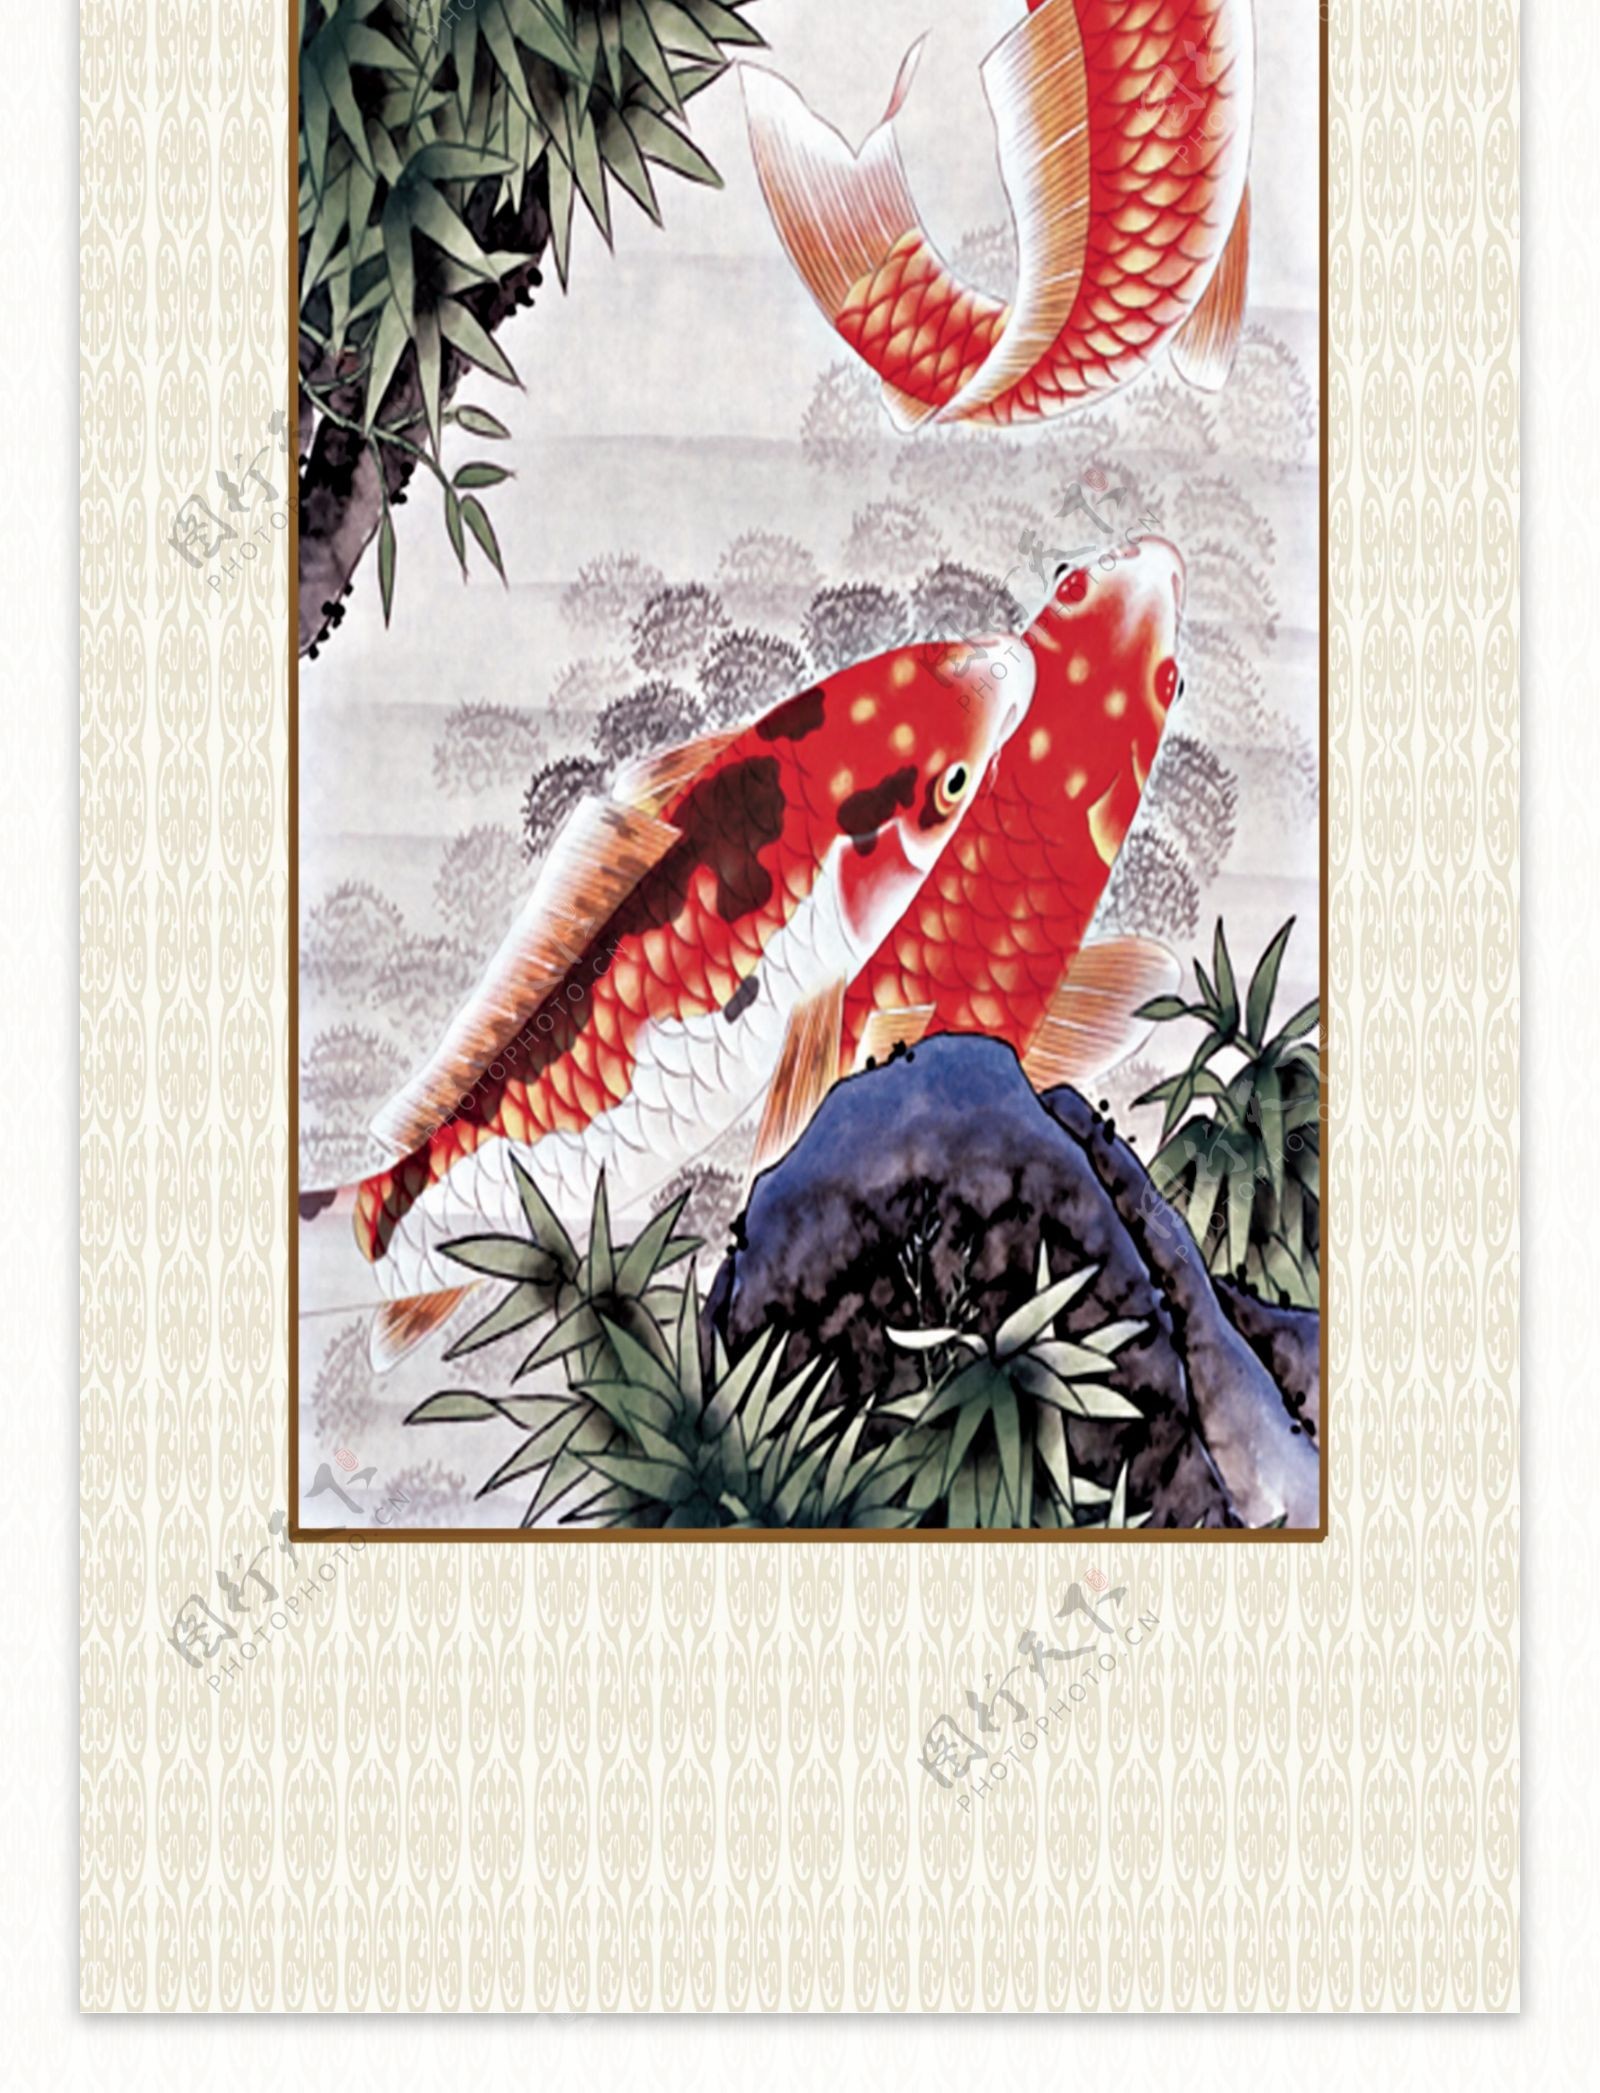 国画竹子鲤鱼图片